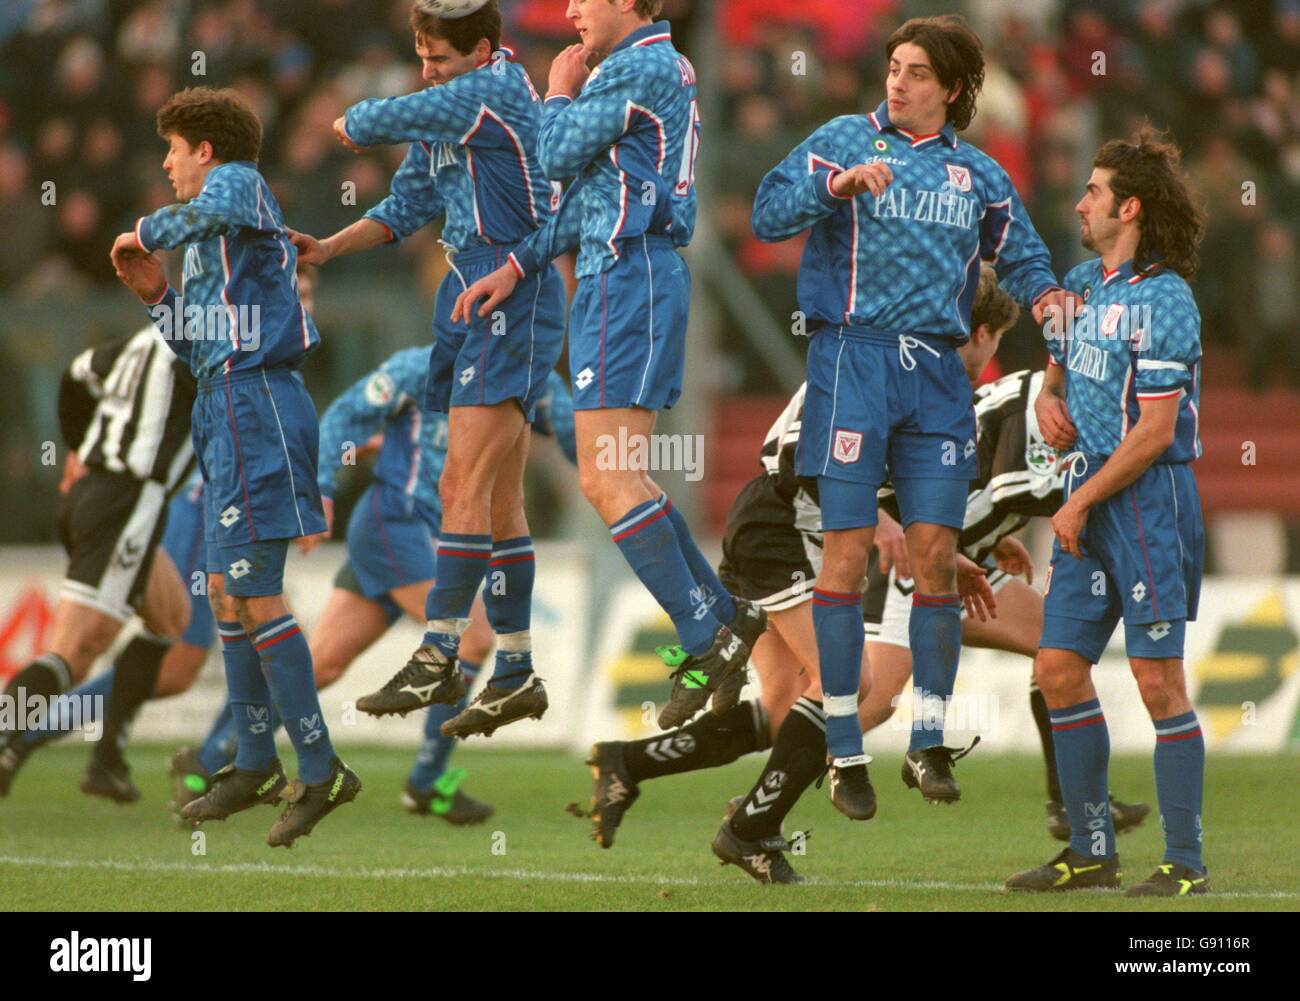 Calcio Italiano - Serie A - Udinese / Vicenza. I giocatori di Vicenza si alzano per fermare la palla Foto Stock